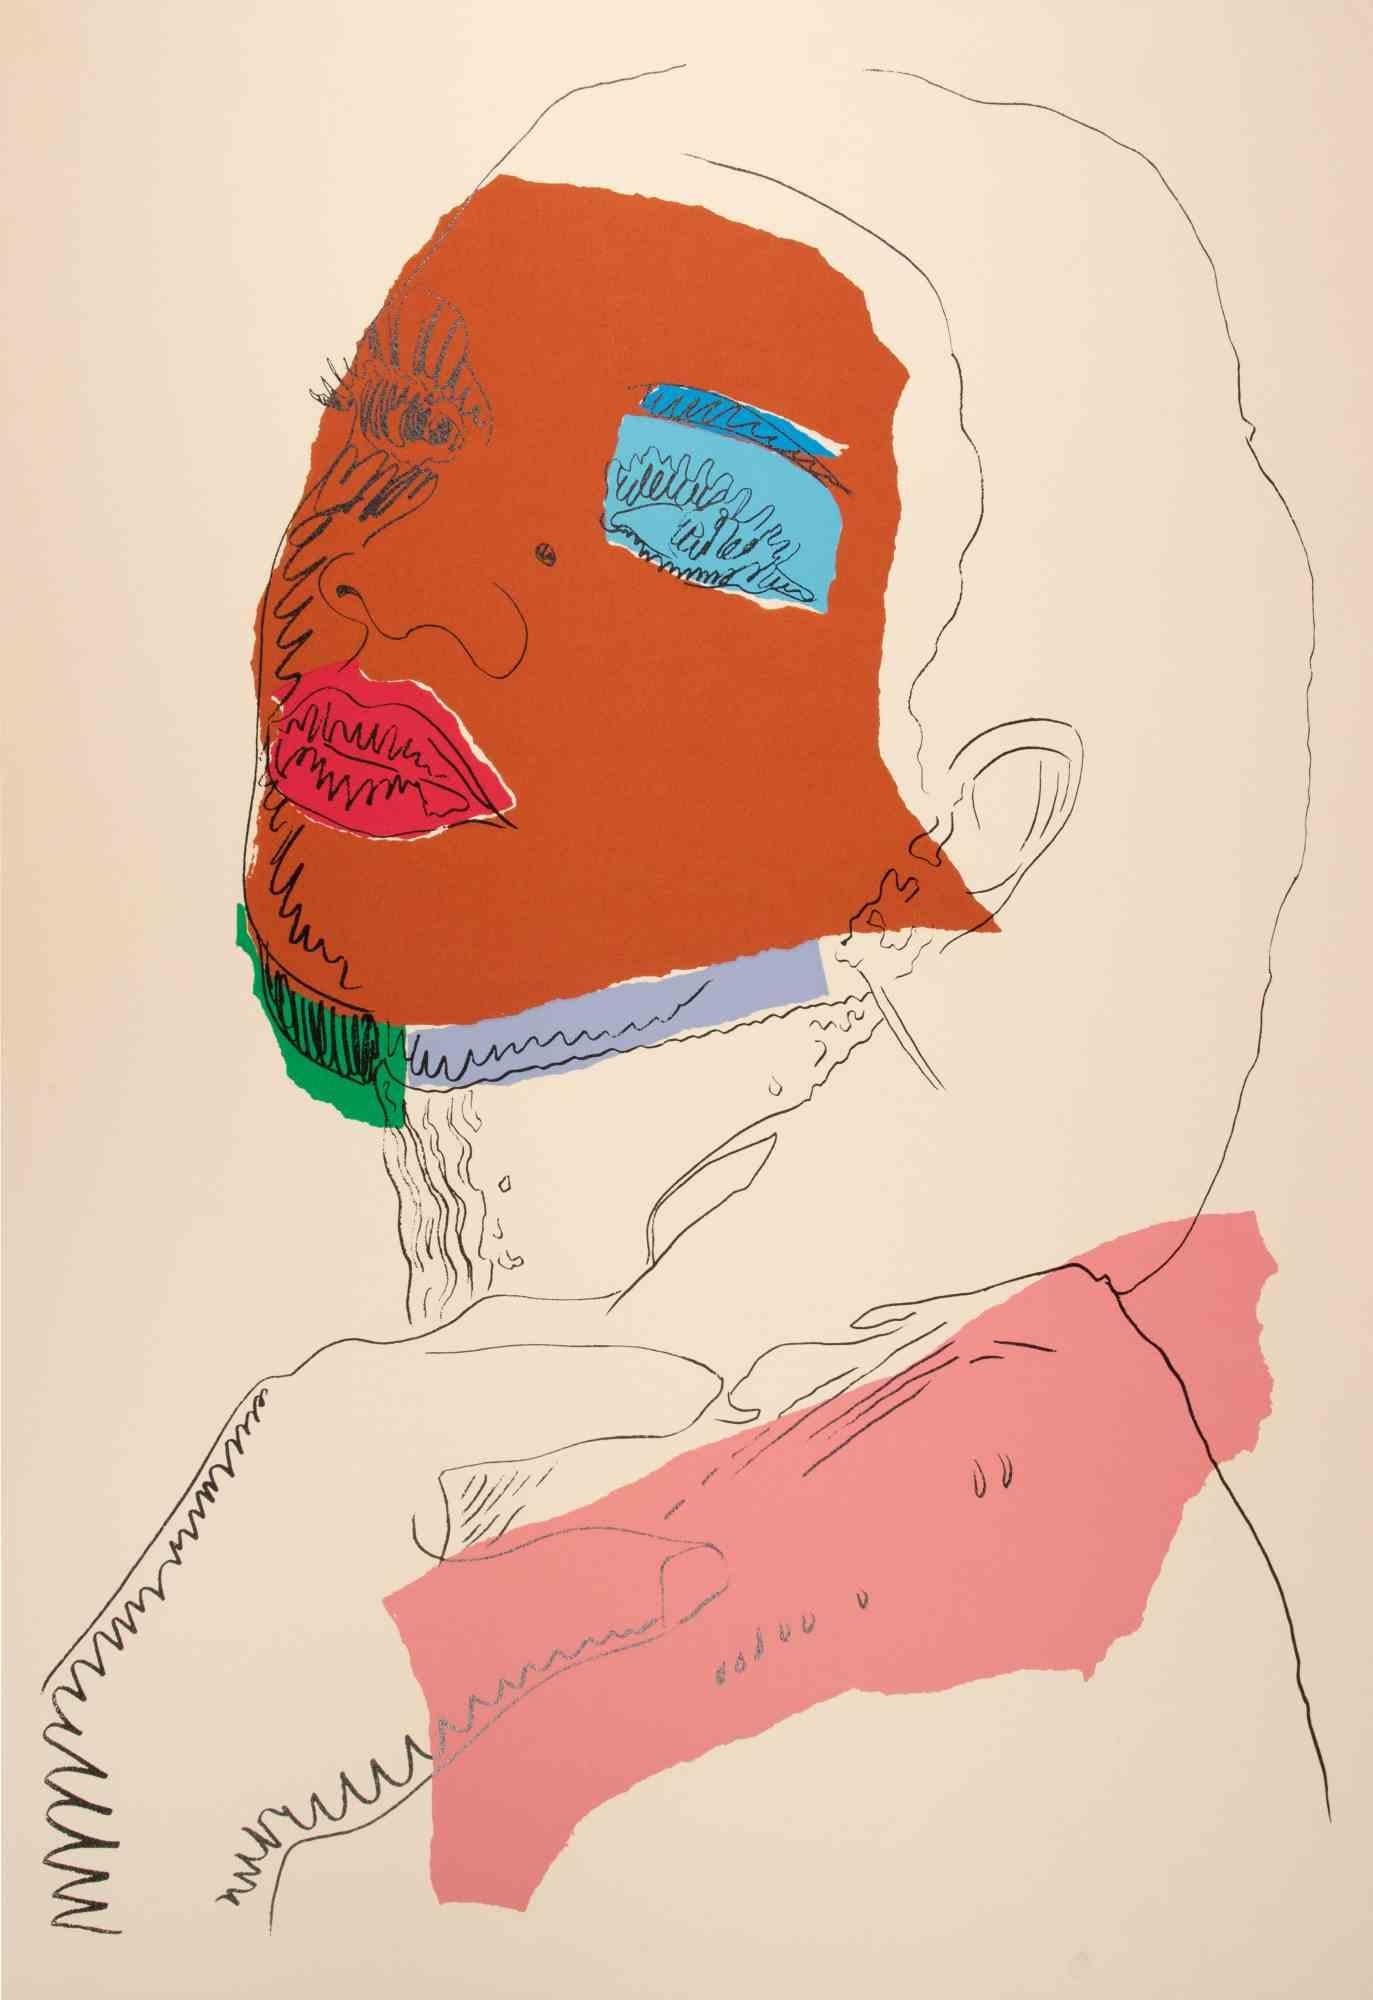 Ladies and Gentlemen est une sérigraphie colorée réalisée en 1975 par l'artiste pop Andy Warhol. 

Sérigraphie en couleurs mixtes

Référence : Feldman-Schellmann, II.127.

Signature et édition au crayon au verso en bas à droite.

Il s'agit d'un des